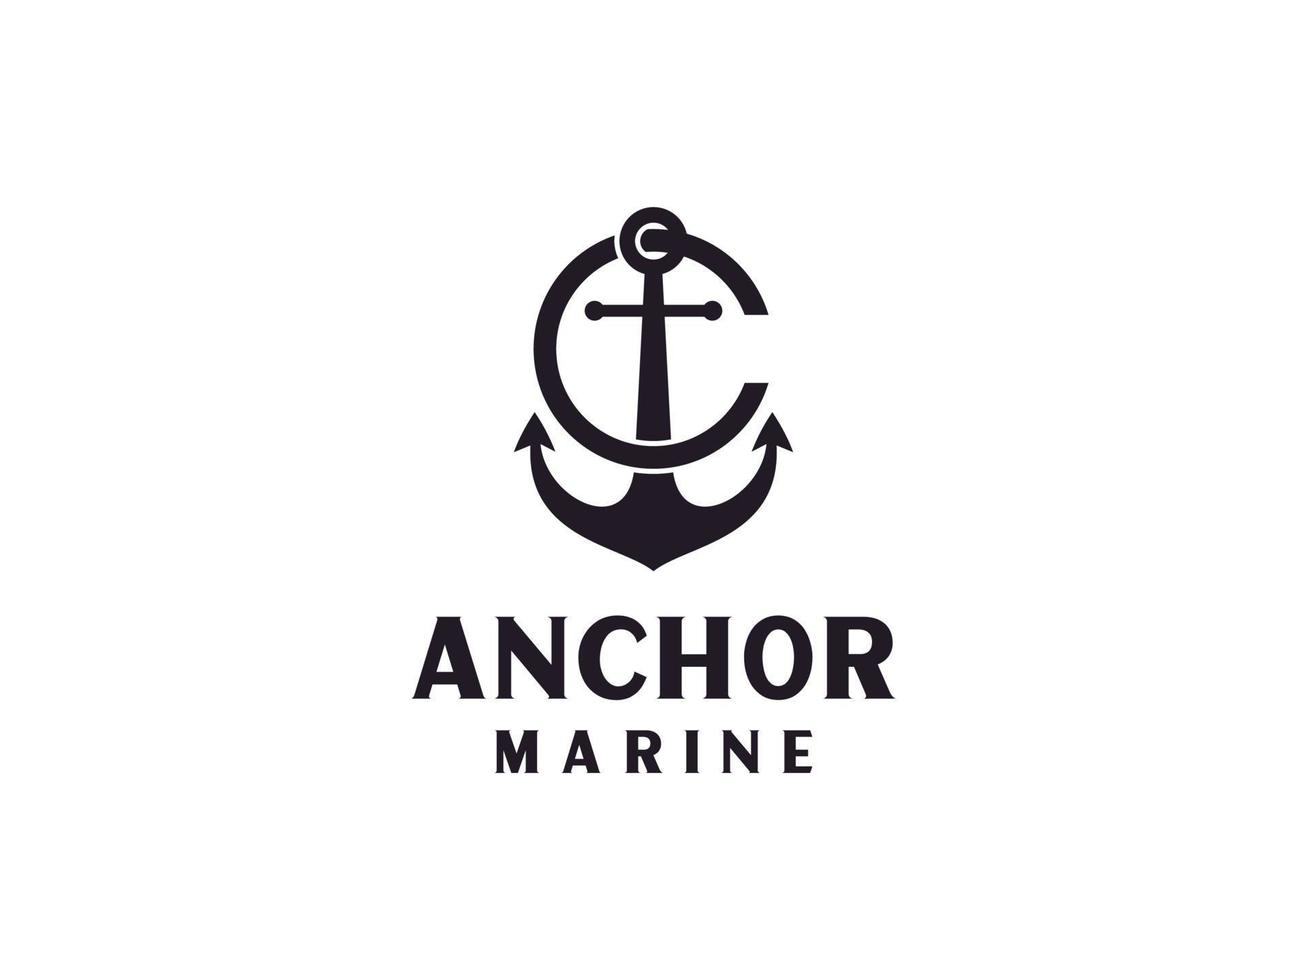 Ankerbuchstabe ein Anfangsalphabet Marineschiff Marineboot Logo schwarz Vintage Retro-Design. verwendbar für Geschäfts- und Markenlogos. flaches Vektor-Logo-Design-Vorlagenelement. vektor